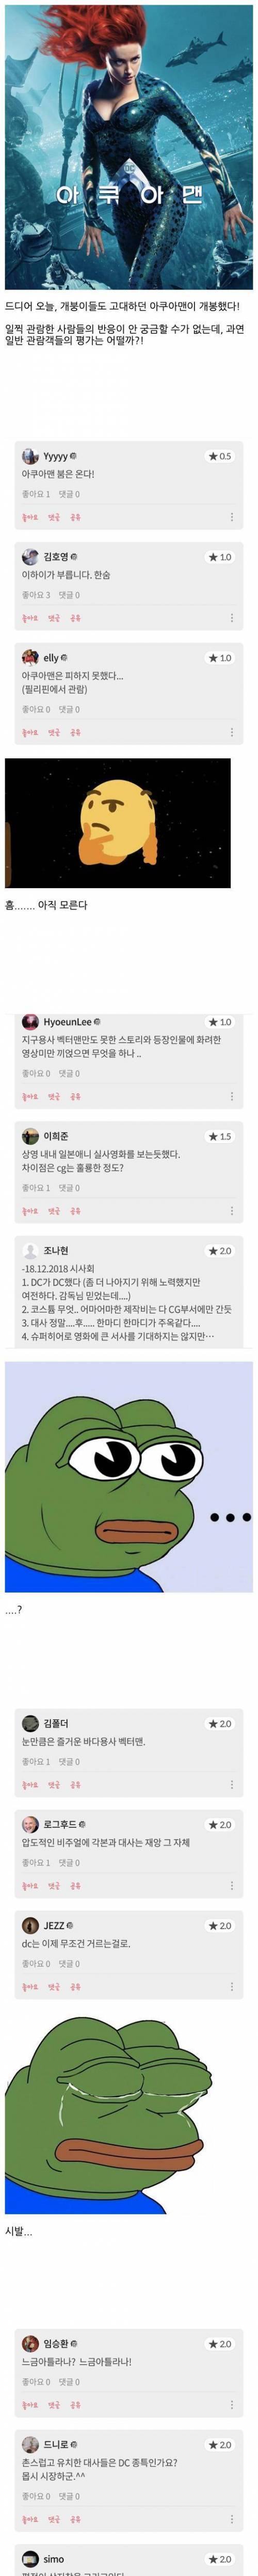 [스압] 영화 <아쿠아맨> 실시간 관람객 반응